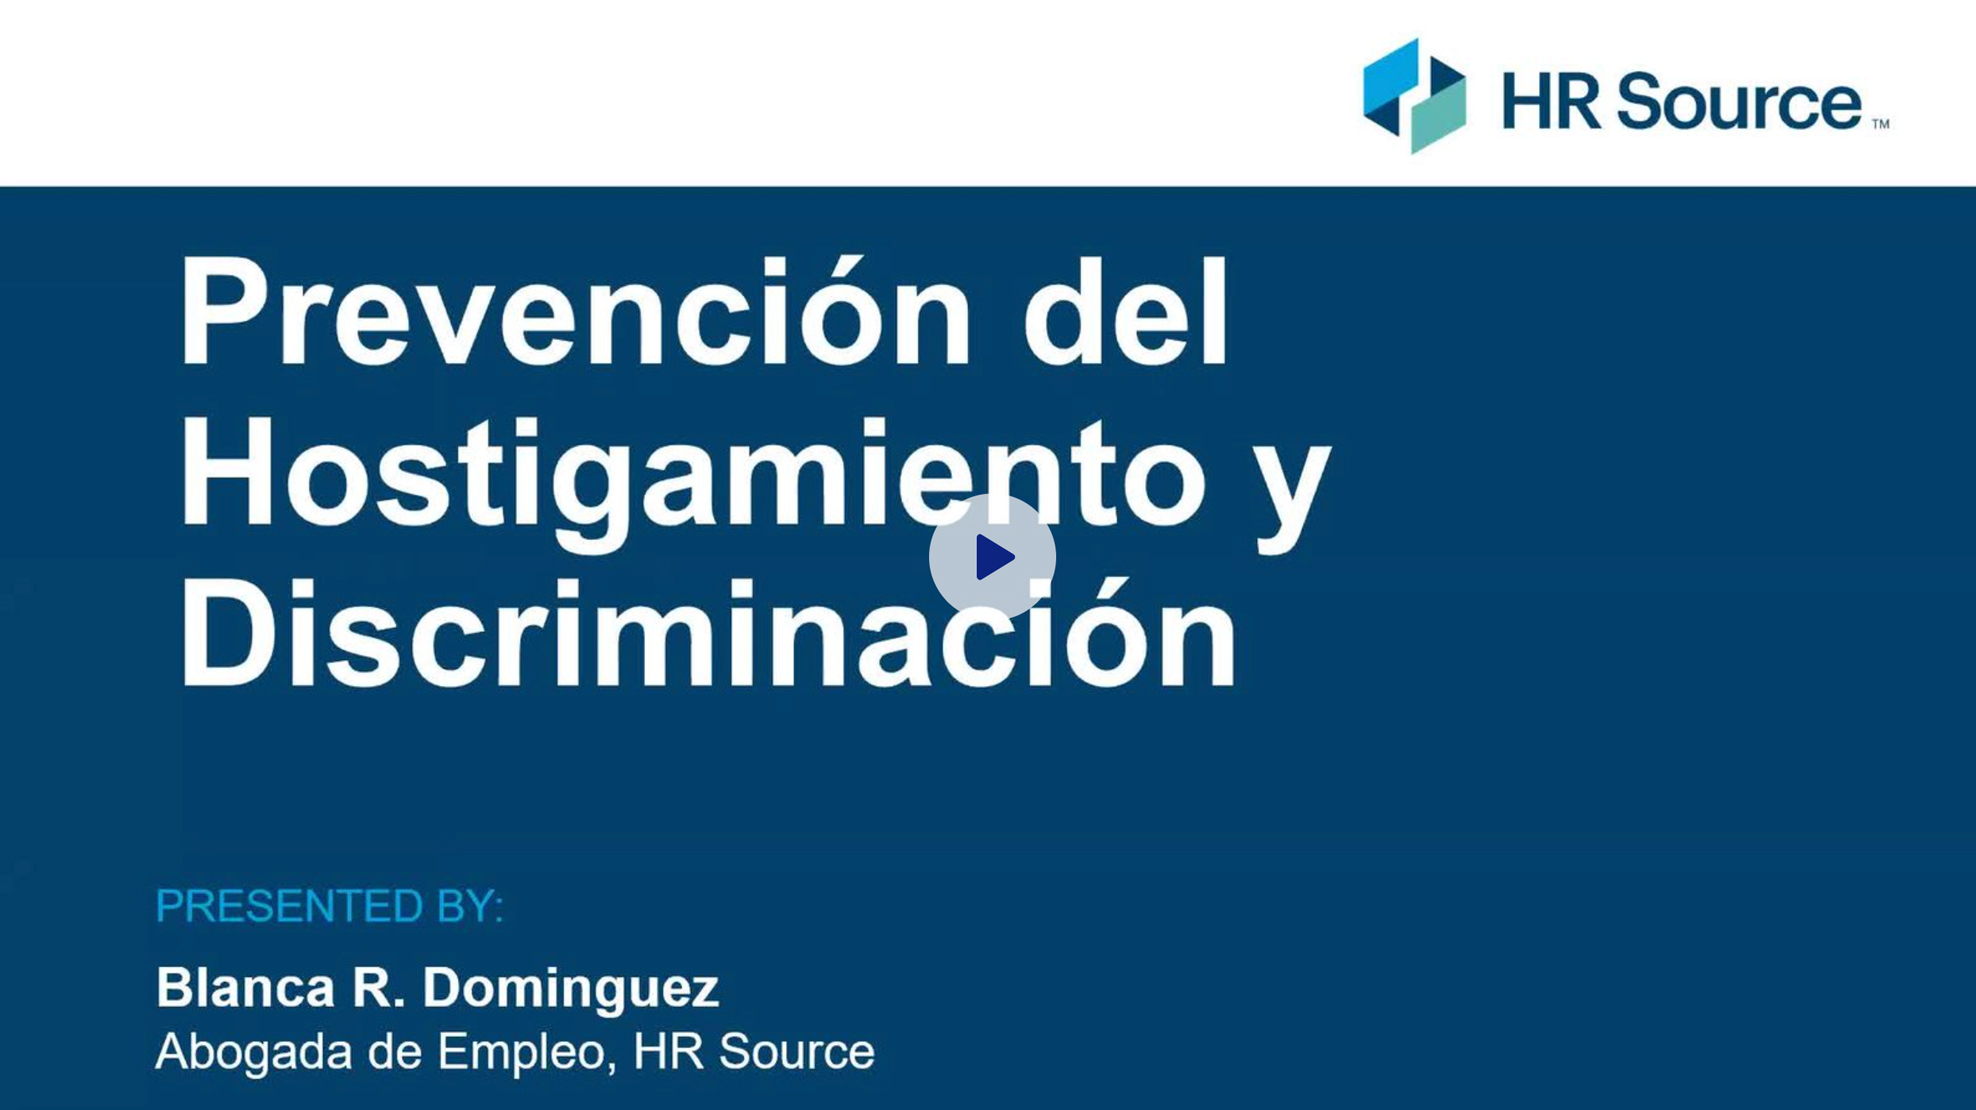 Harassment Prevention Training for Employees (Spanish)